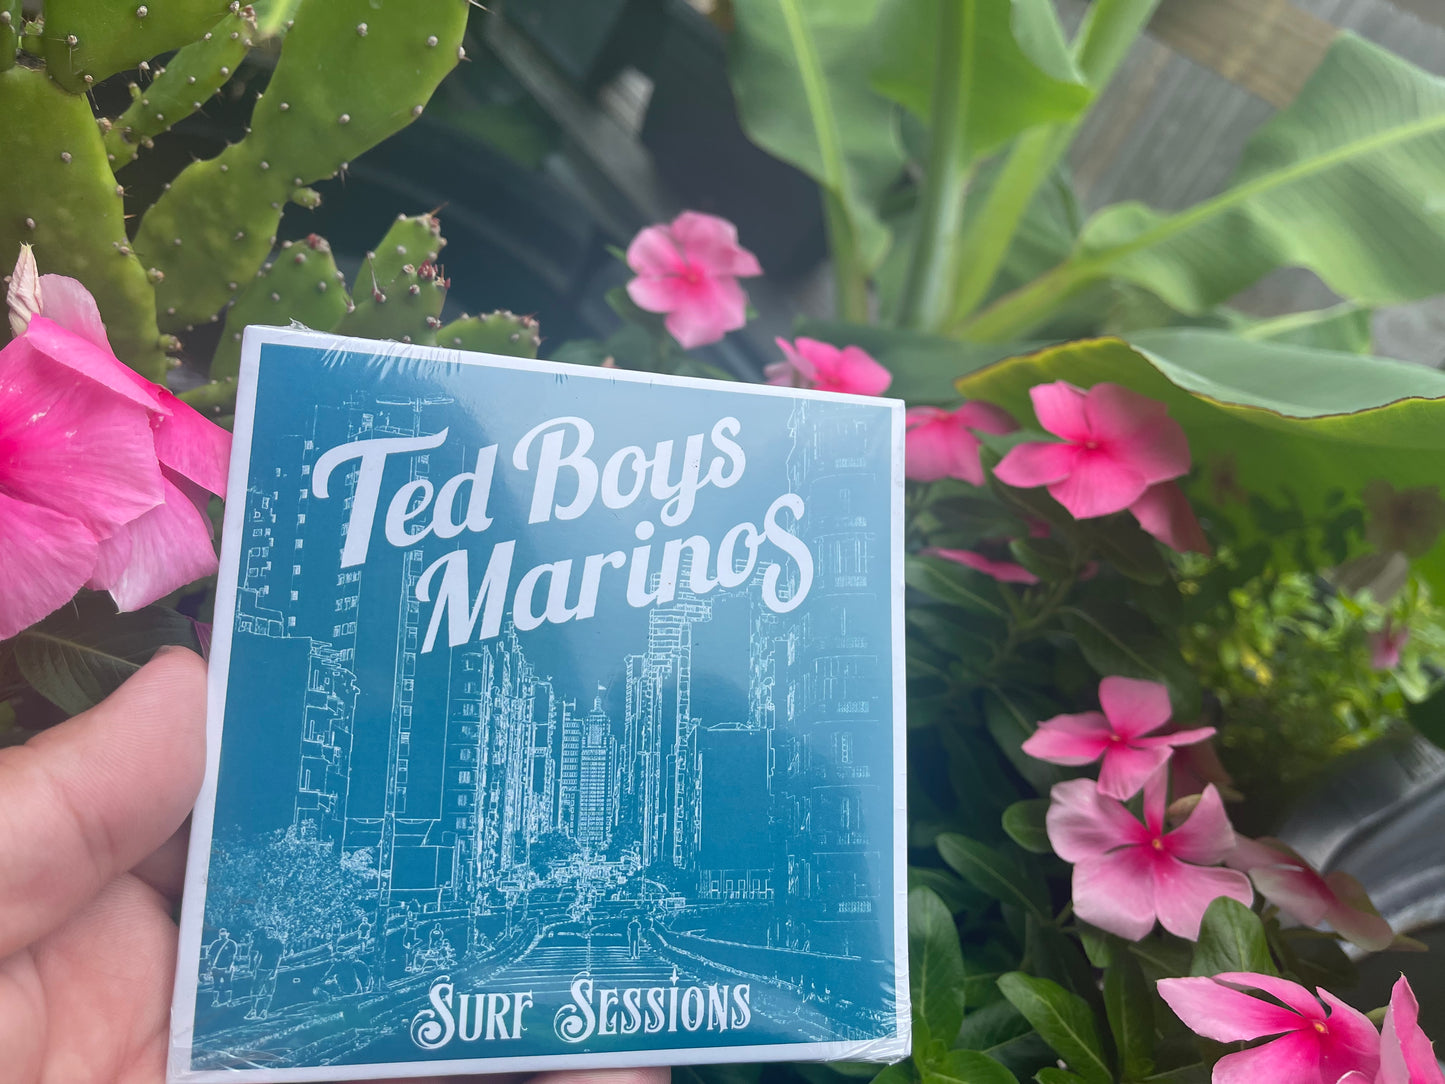 OMR-003 Ted Boys Marinos “Surf Sessions” Vinyl/CD